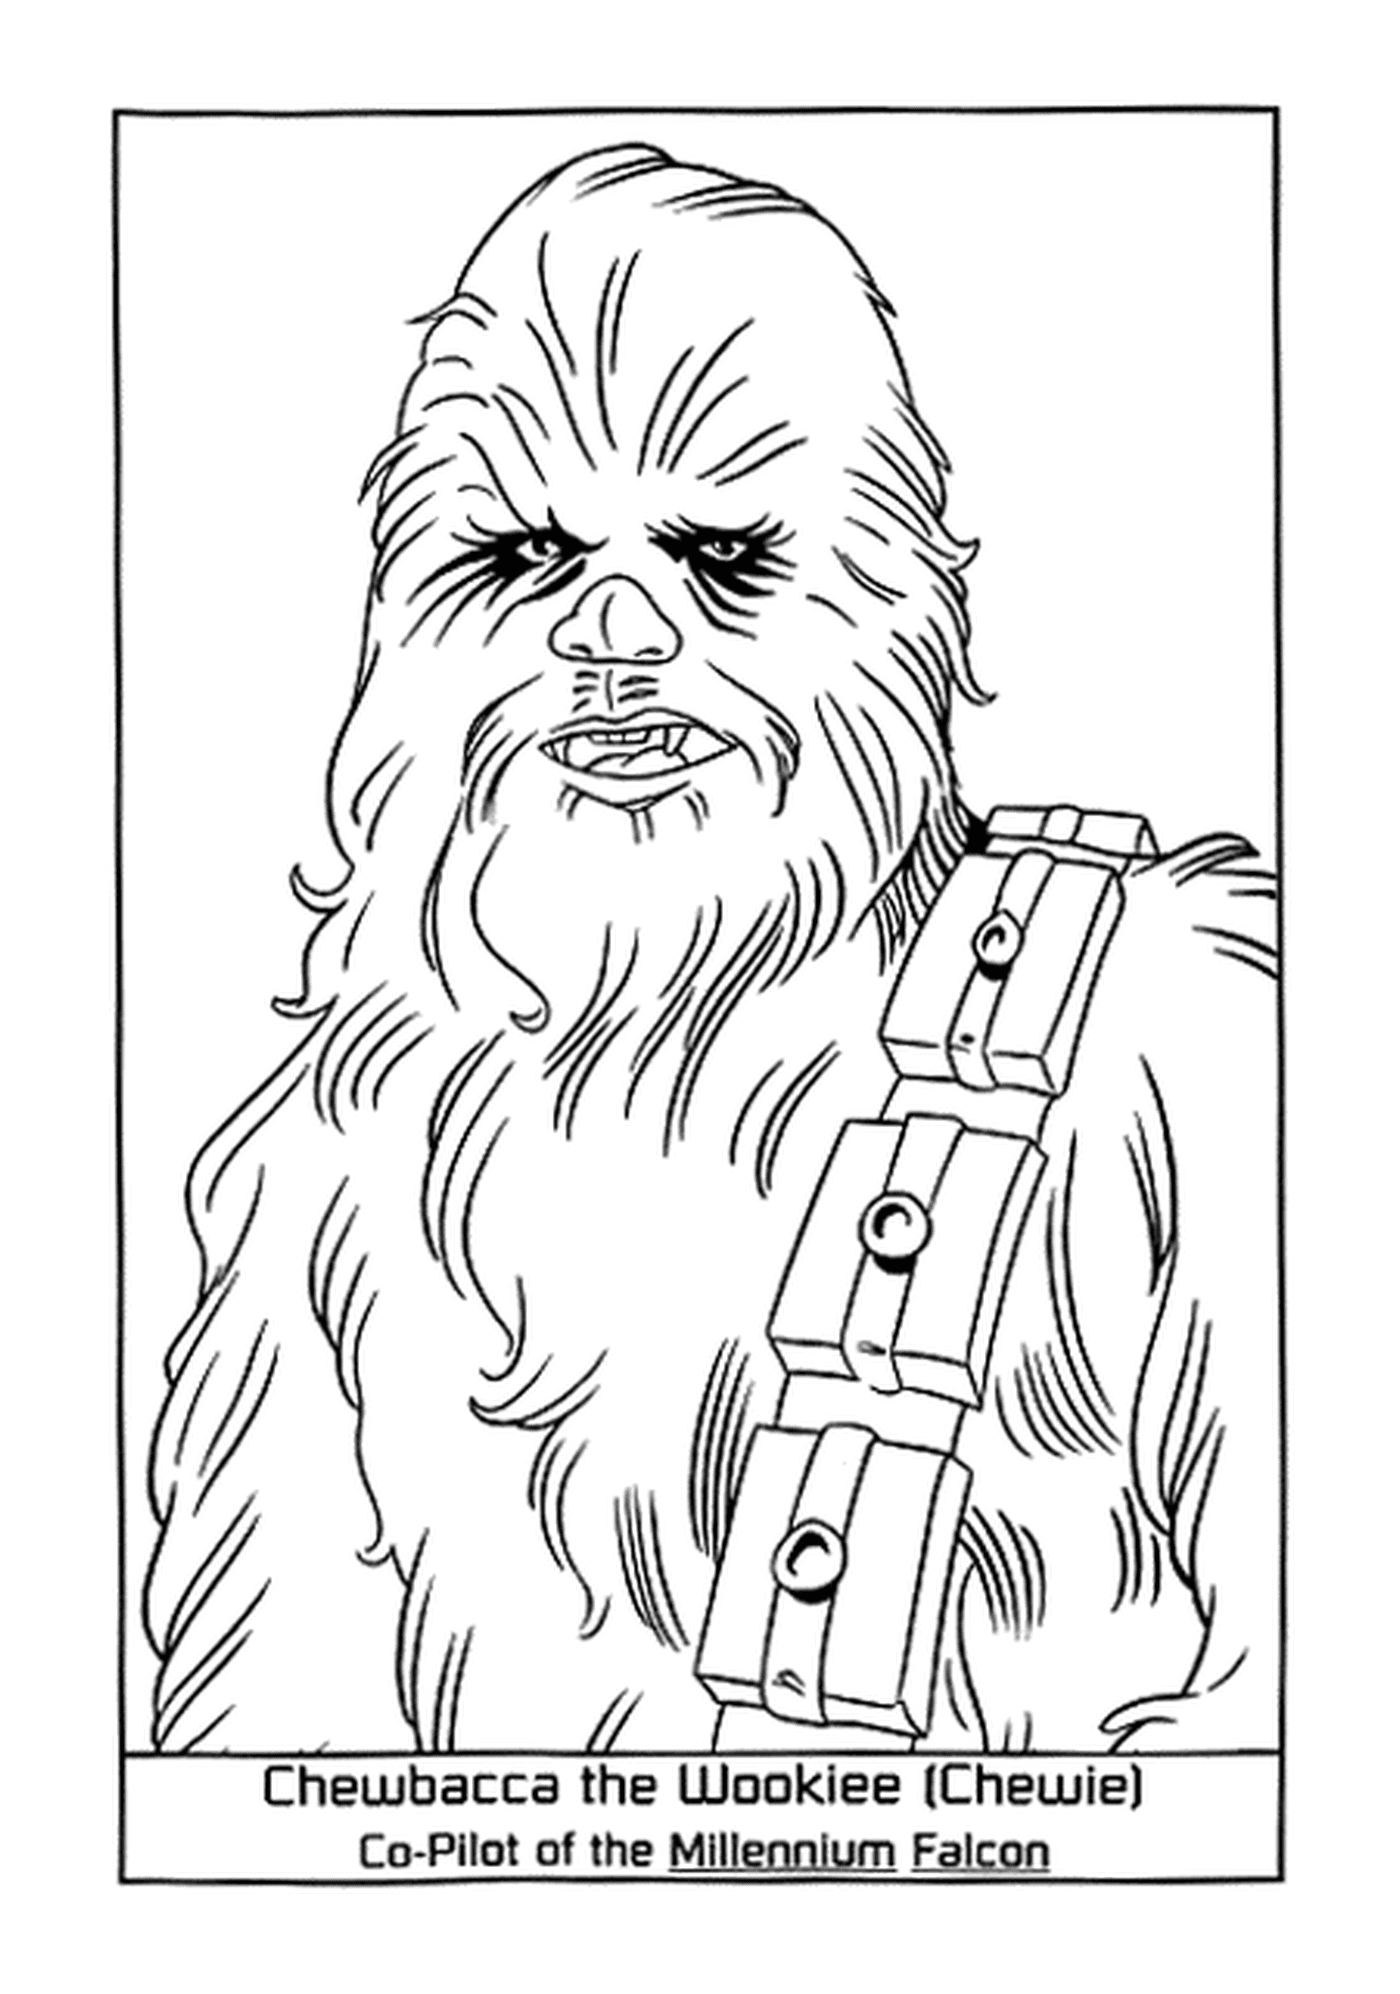  La fiel Chewbacca Wookiee 